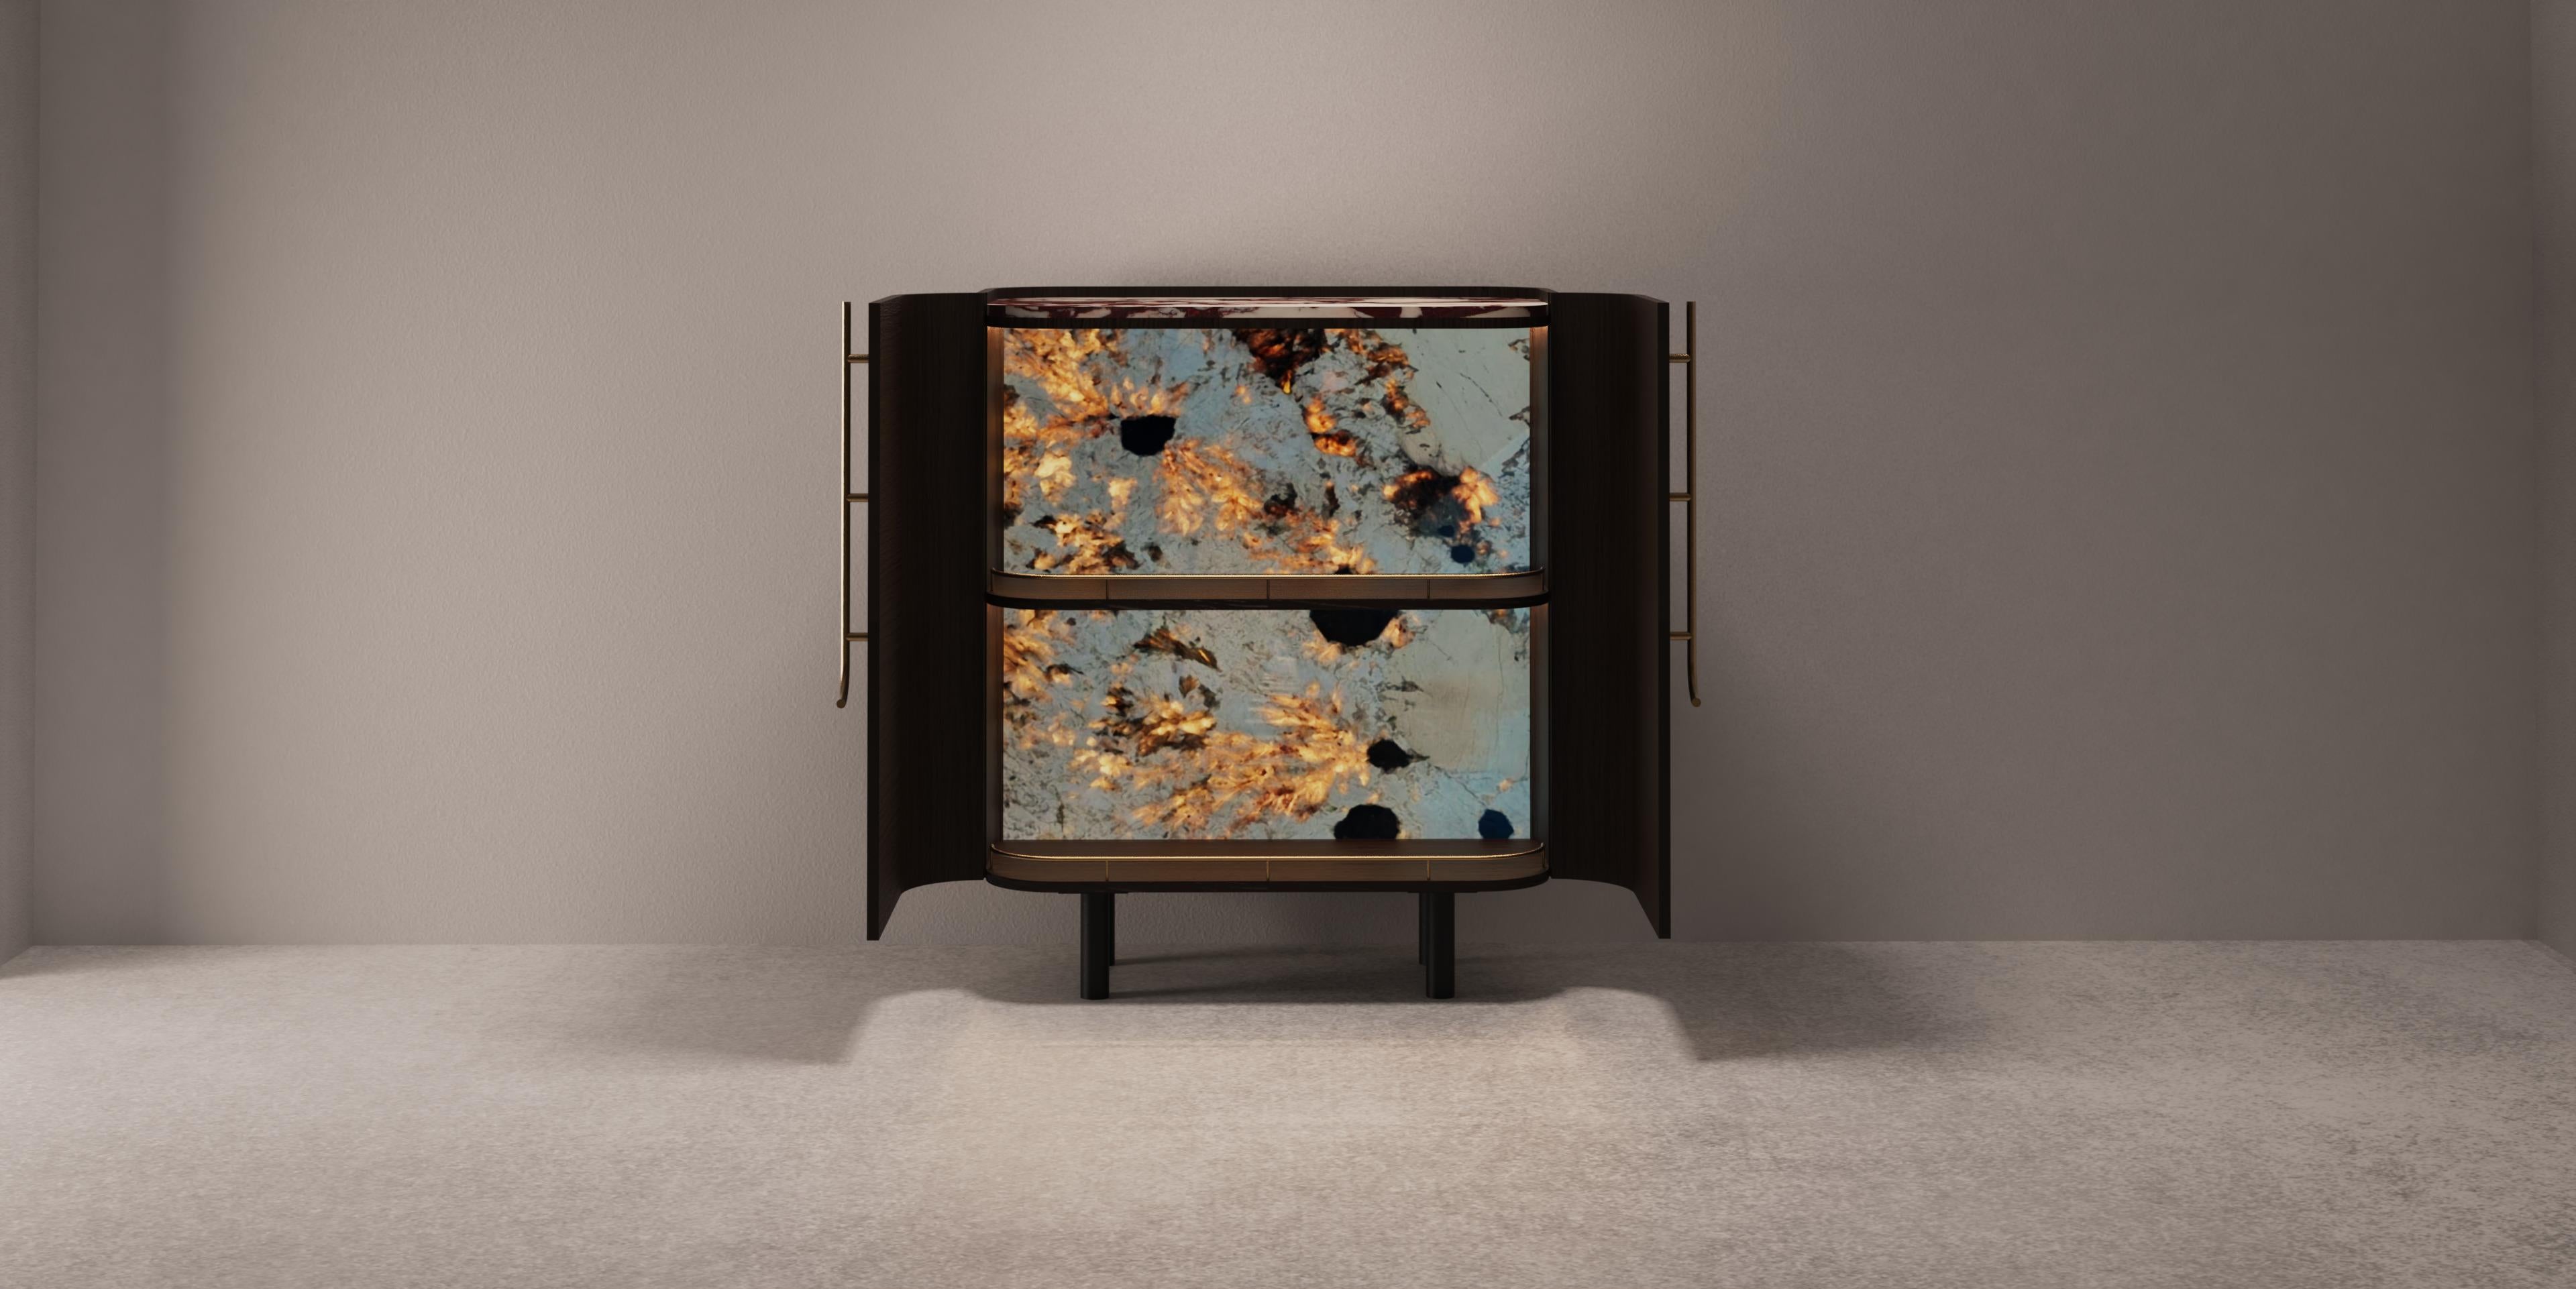 Olival Bar Cabinet, Collection'S Contemporary, handgefertigt in Portugal - Europa von Greenapple.

Der moderne Barschrank Olival wurde von Rute Martins für die Collection'S Contemporary entworfen. Er ist von der heiligen Symbolik des antiken